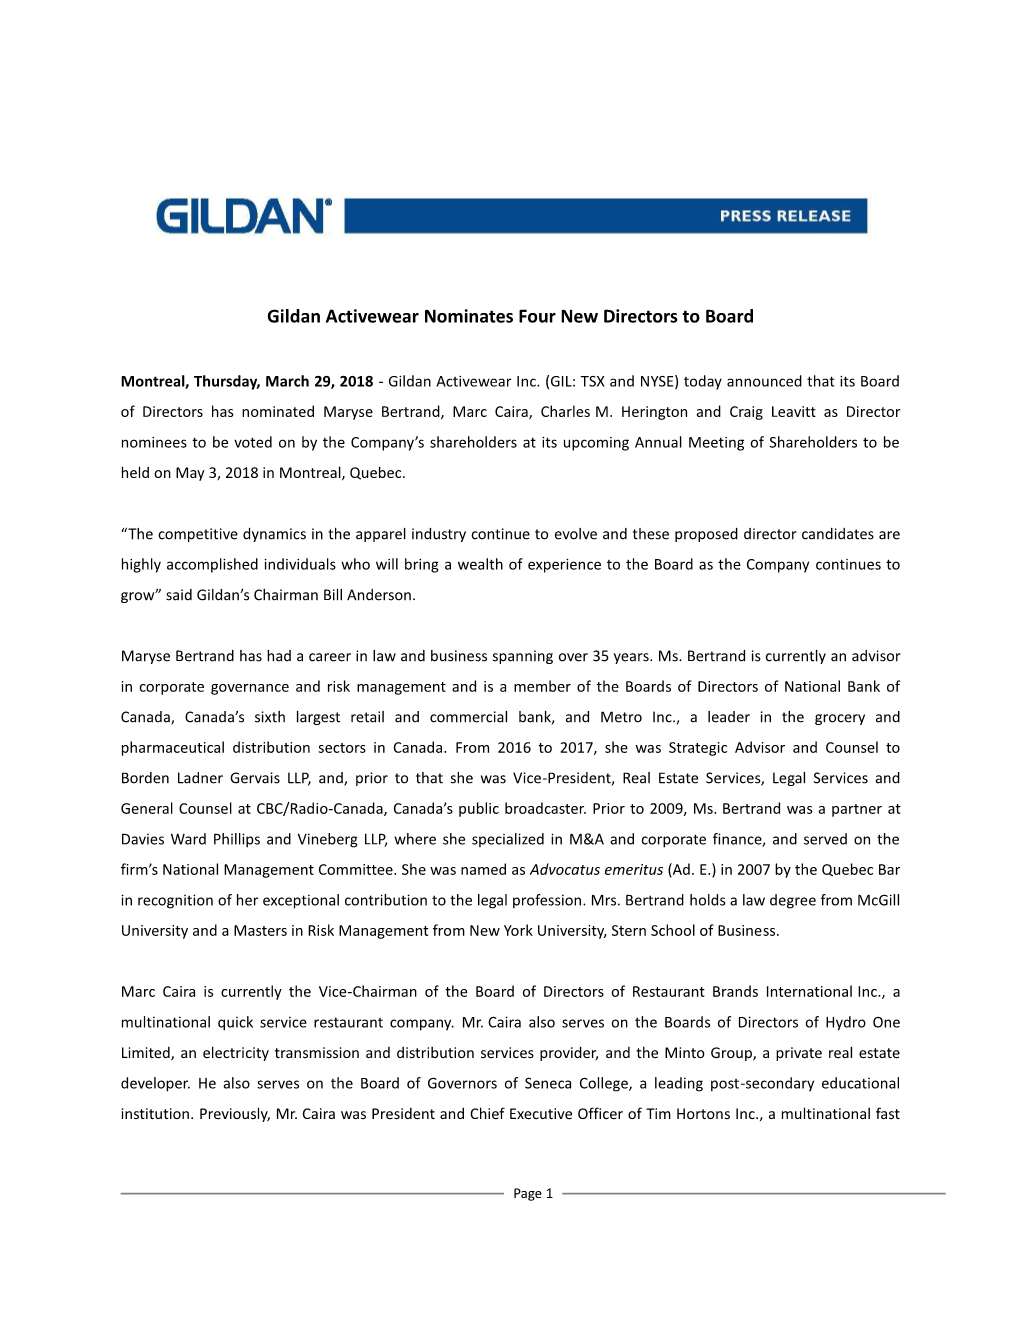 Gildan Activewear Nominates Four New Directors to Board